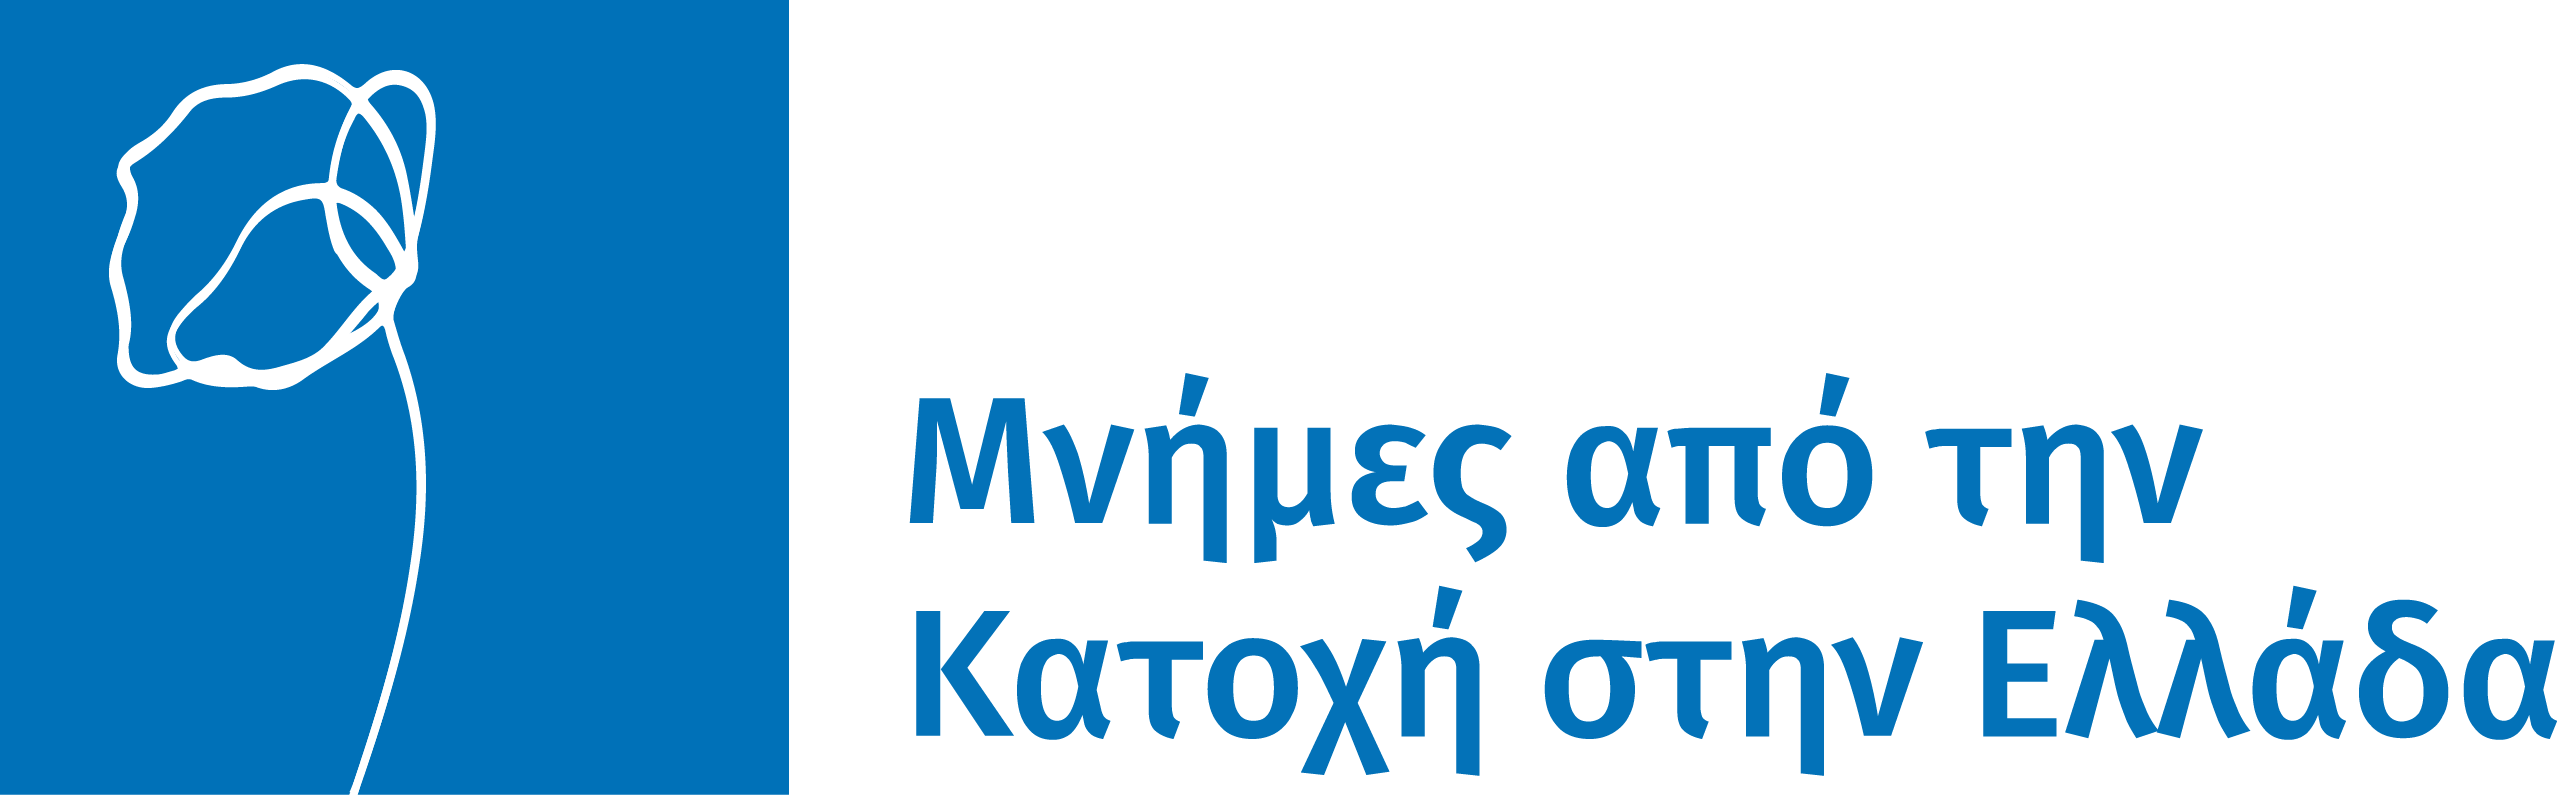 Μνήμη, μαρτυρία και η ψηφιακή προσέγγιση της ιστορίας: το Αρχείο «Μνήμες από την Κατοχή στην Ελλάδα»